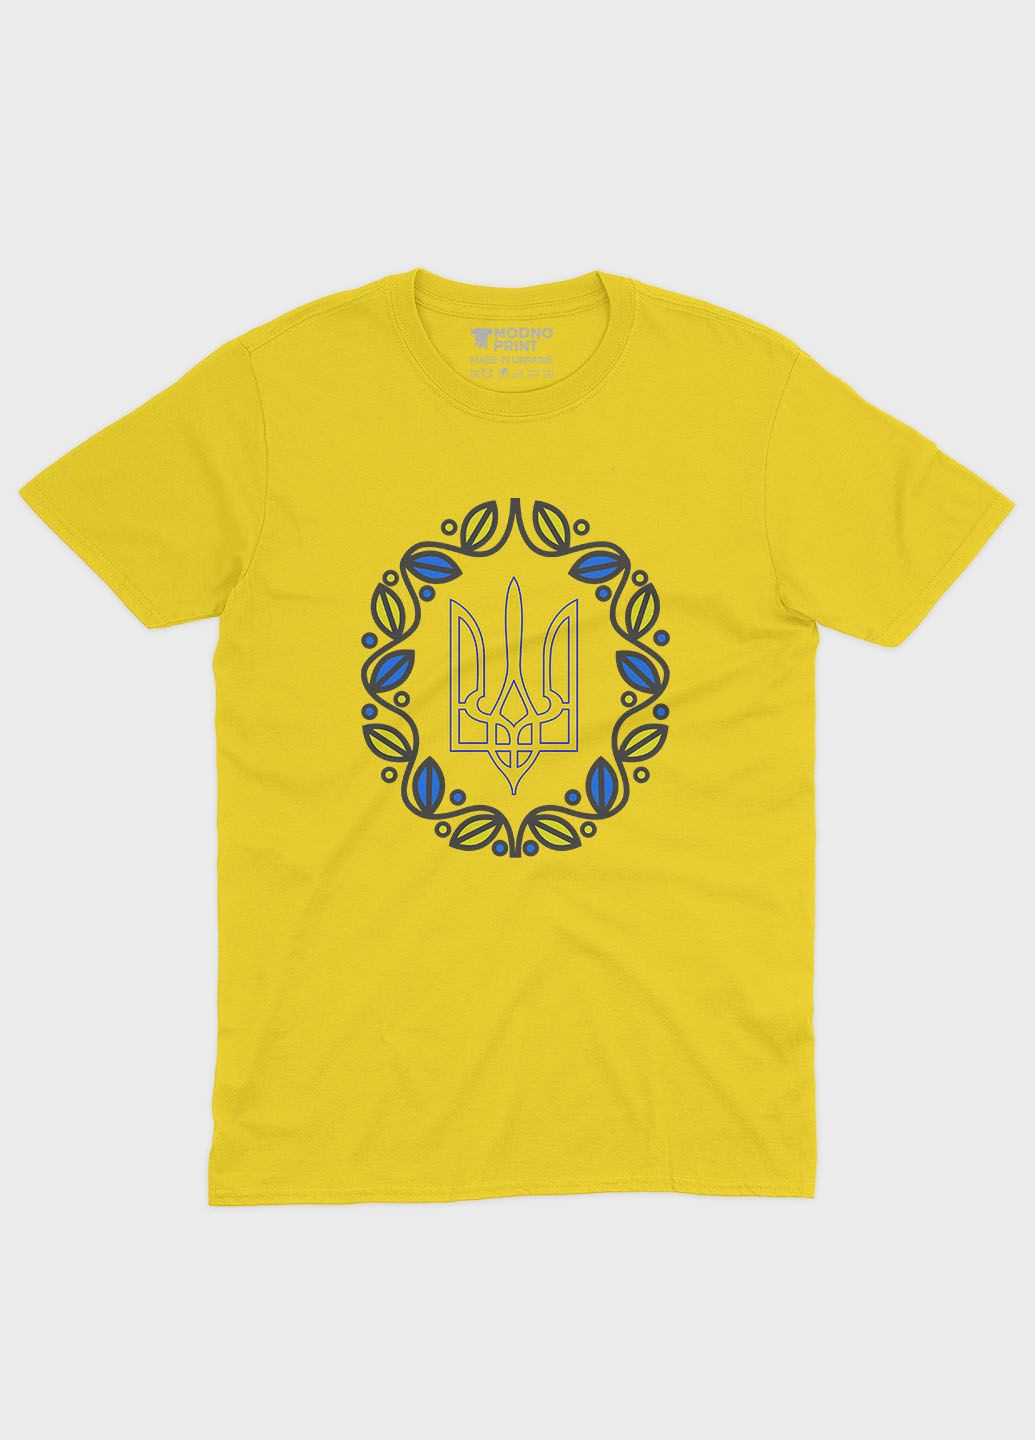 Желтая демисезонная футболка для девочки с патриотическим принтом гербтризуб (ts001-2-sun-005-1-052-g) Modno